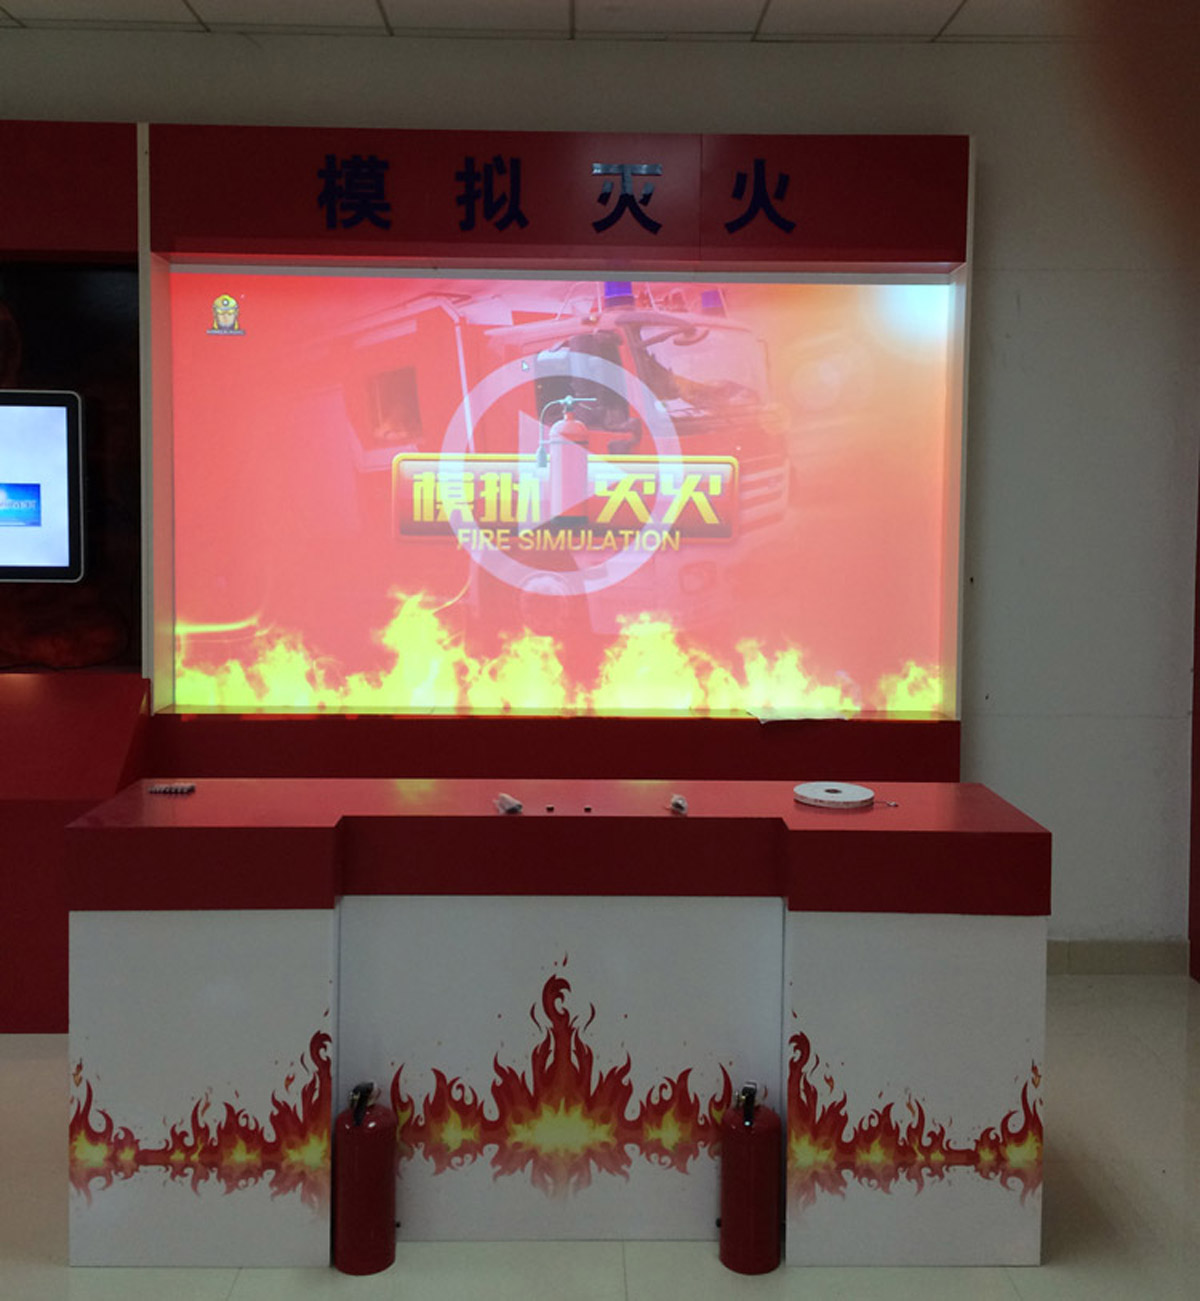 安全体验大屏幕模拟灭火体验设备.jpg